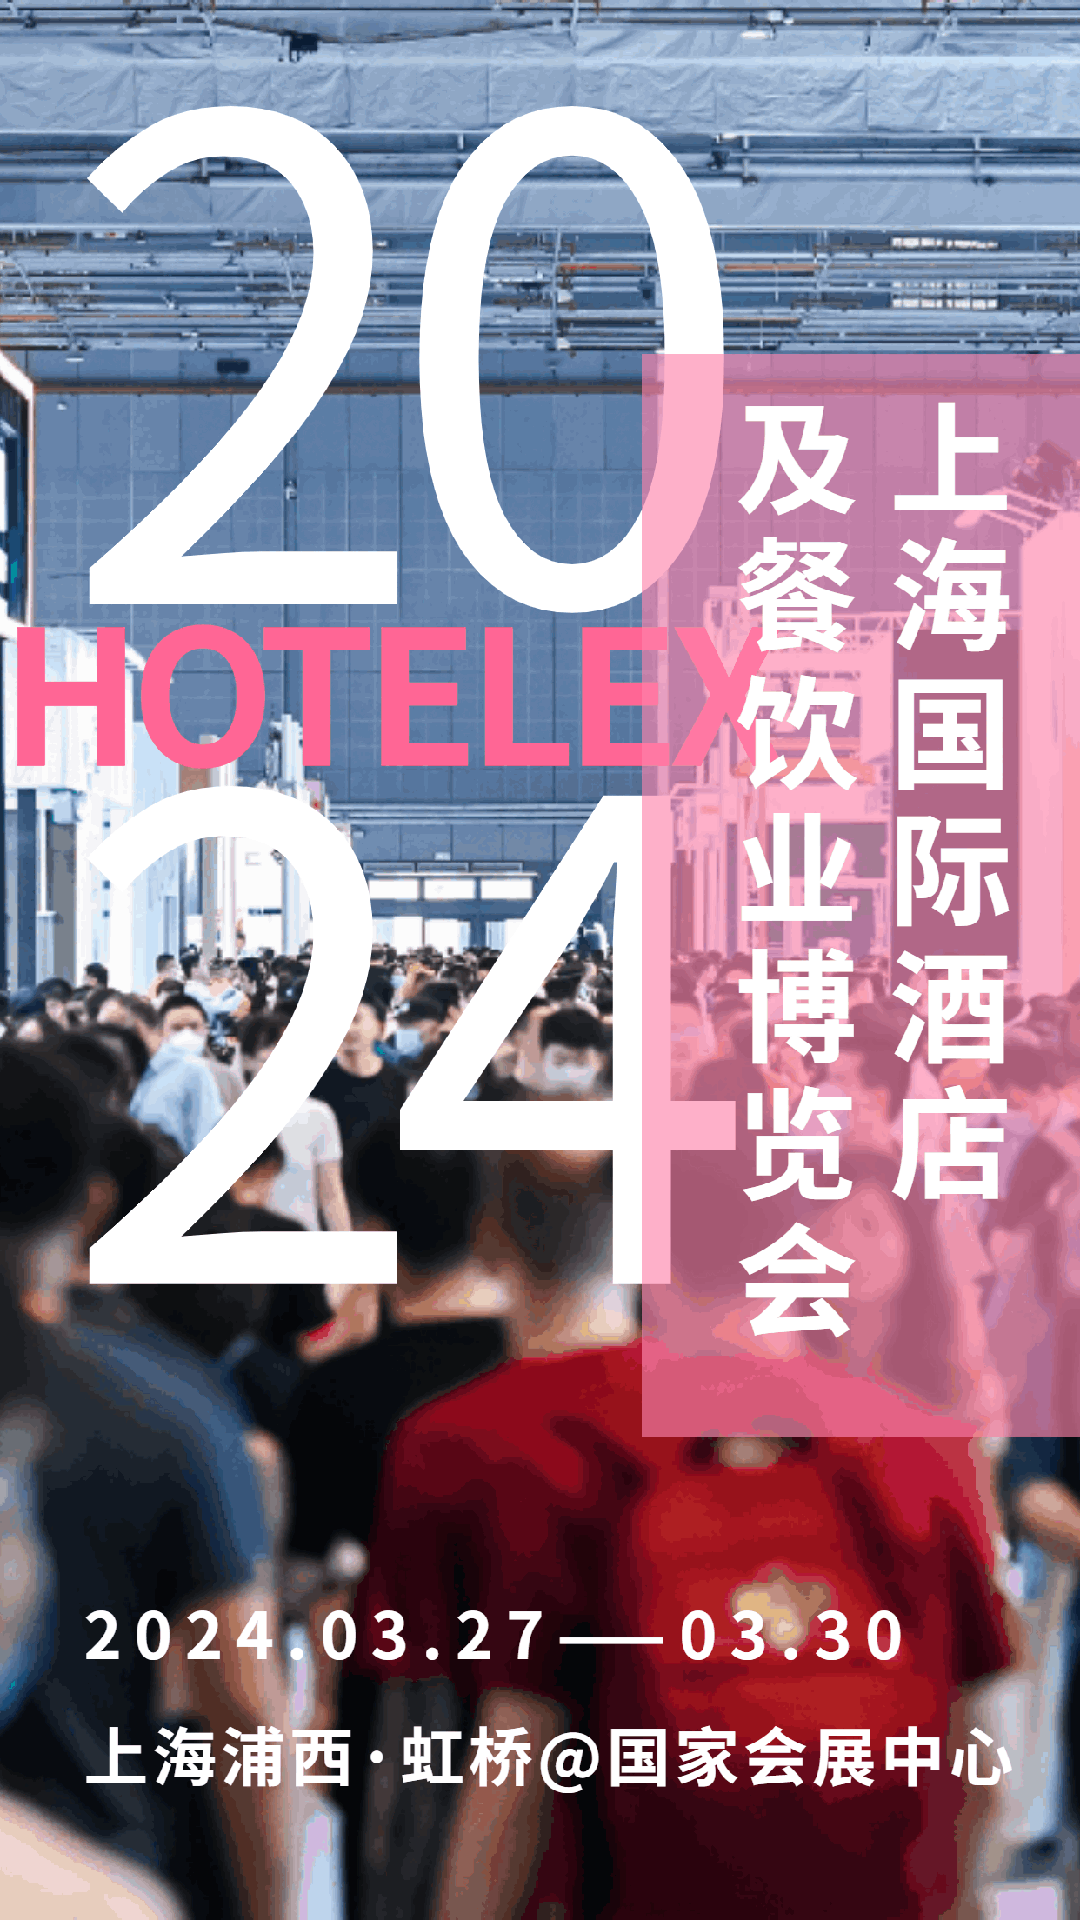 2024年上海*32届酒店商用智能蒸饭车展览会——上海酒店用品展